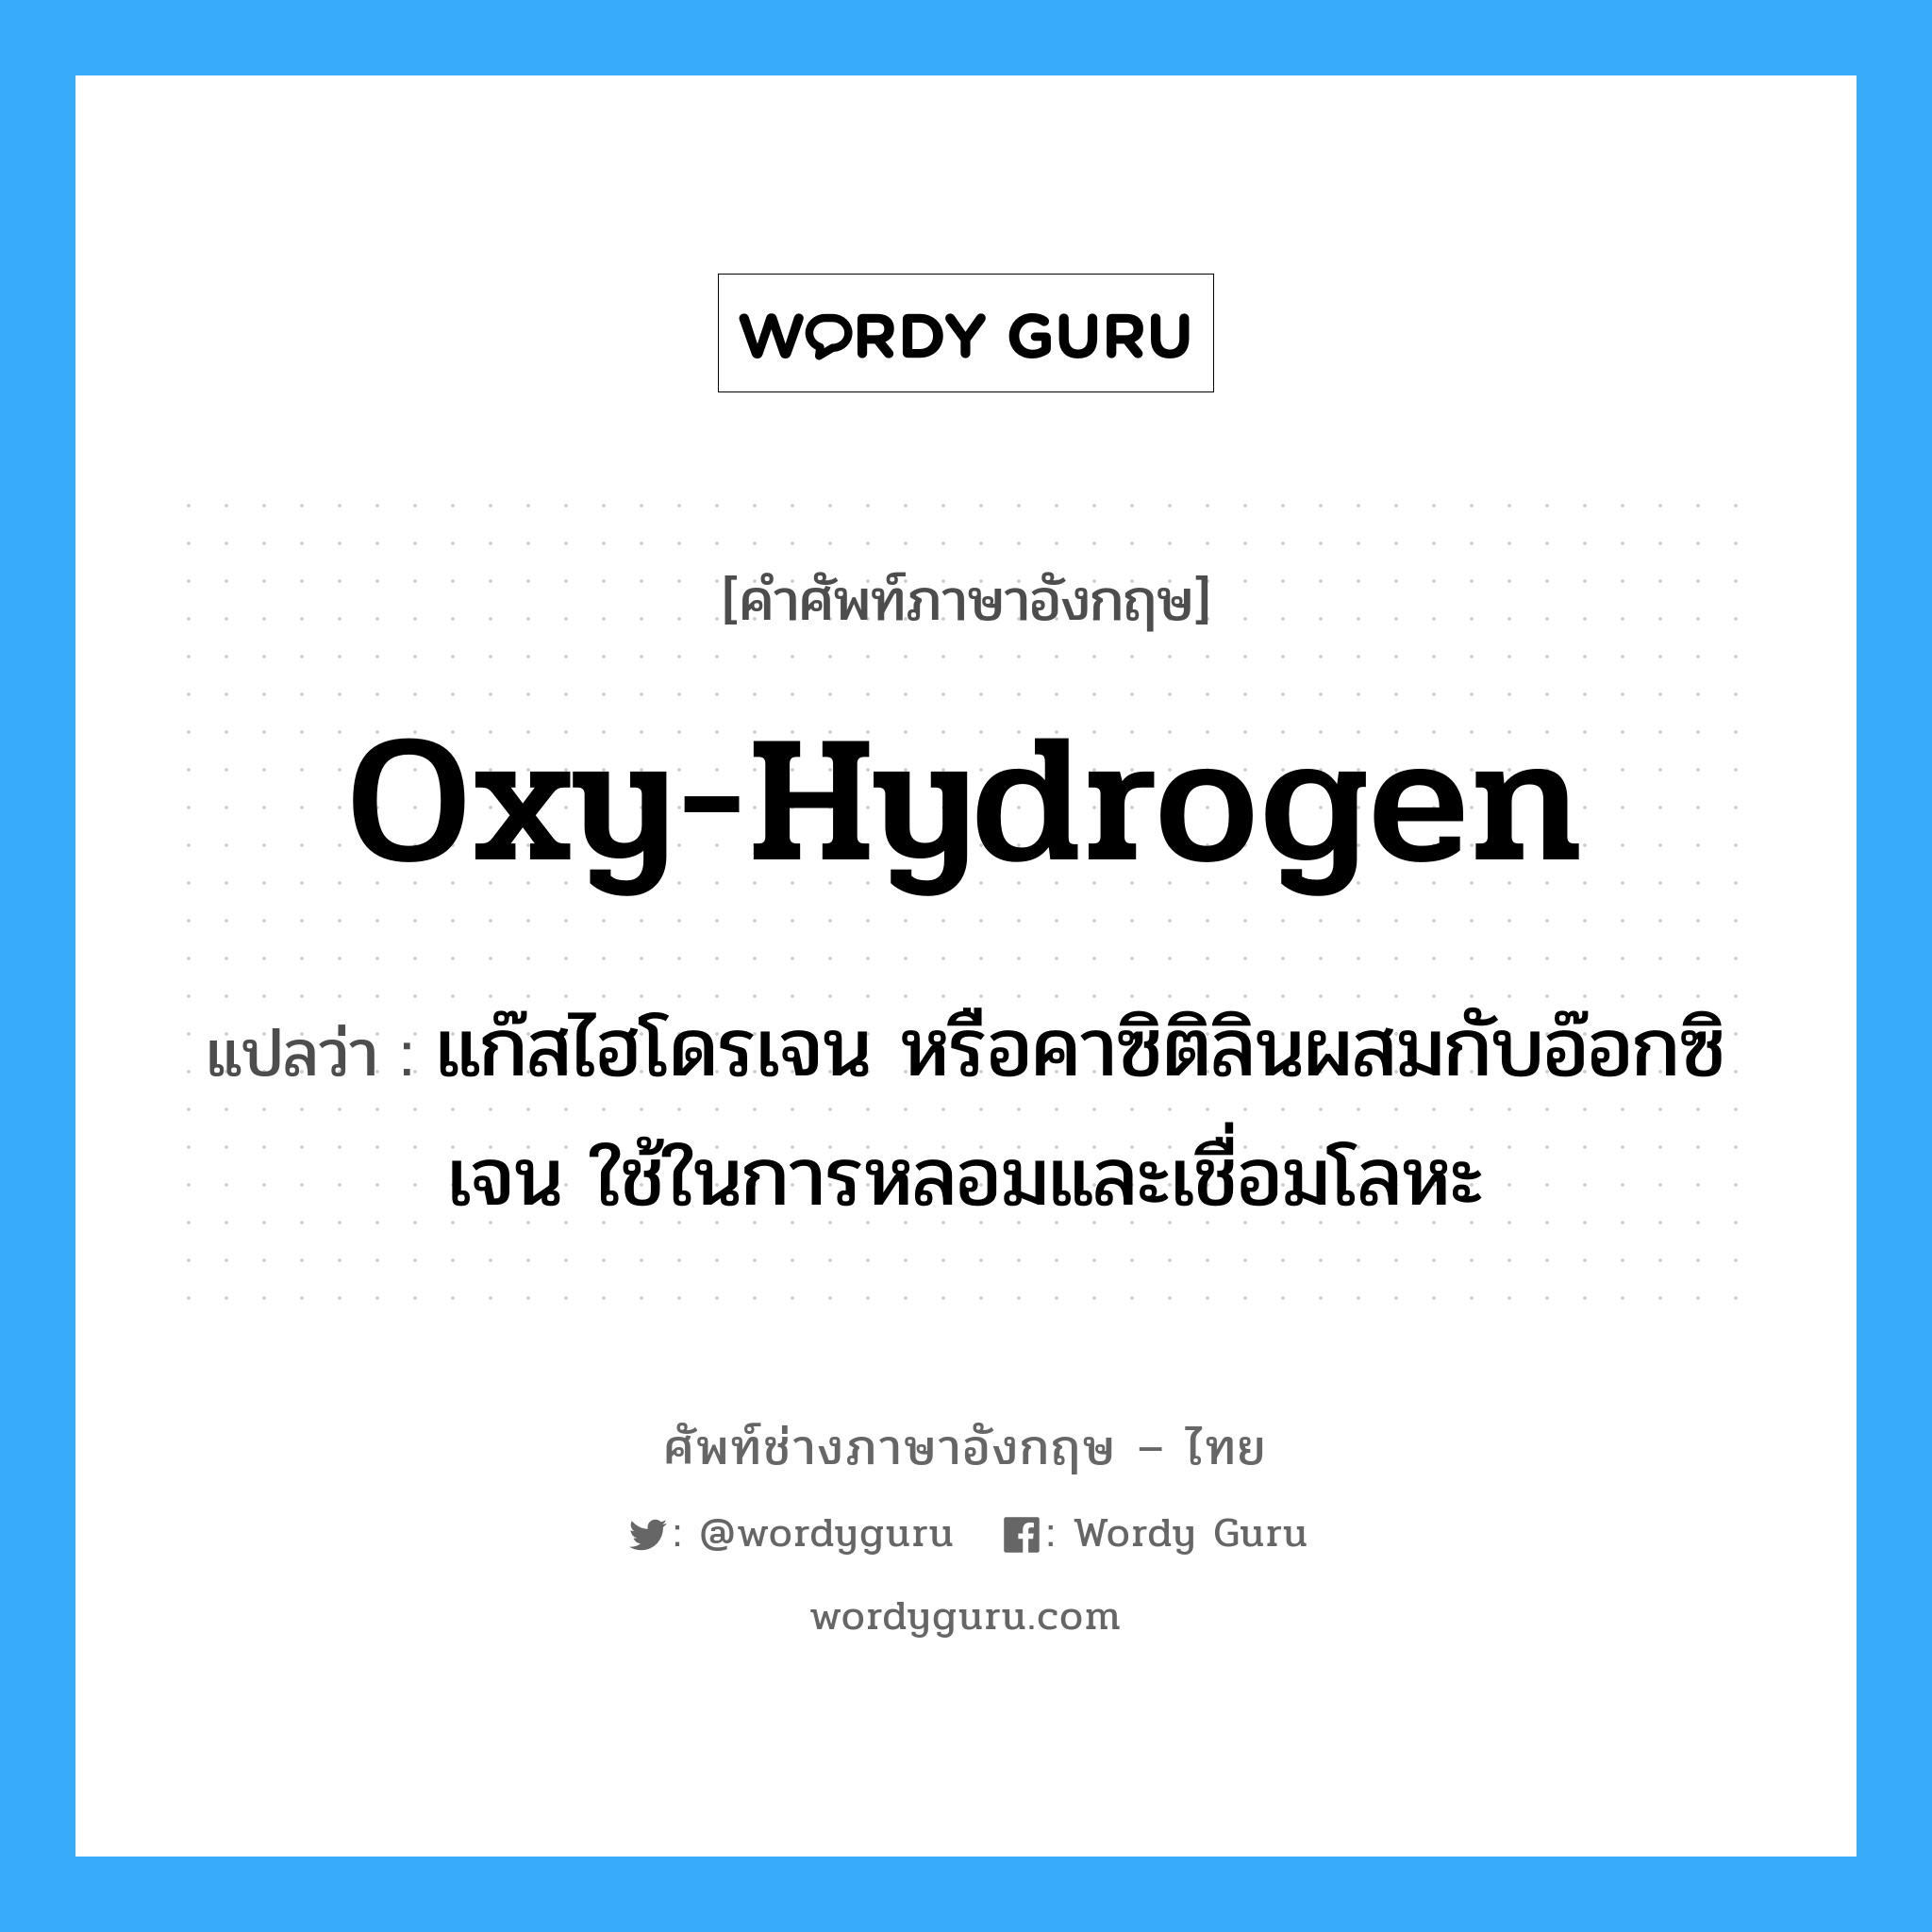 oxy-hydrogen แปลว่า?, คำศัพท์ช่างภาษาอังกฤษ - ไทย oxy-hydrogen คำศัพท์ภาษาอังกฤษ oxy-hydrogen แปลว่า แก๊สไฮโดรเจน หรือคาซิติลินผสมกับอ๊อกซิเจน ใช้ในการหลอมและเชื่อมโลหะ